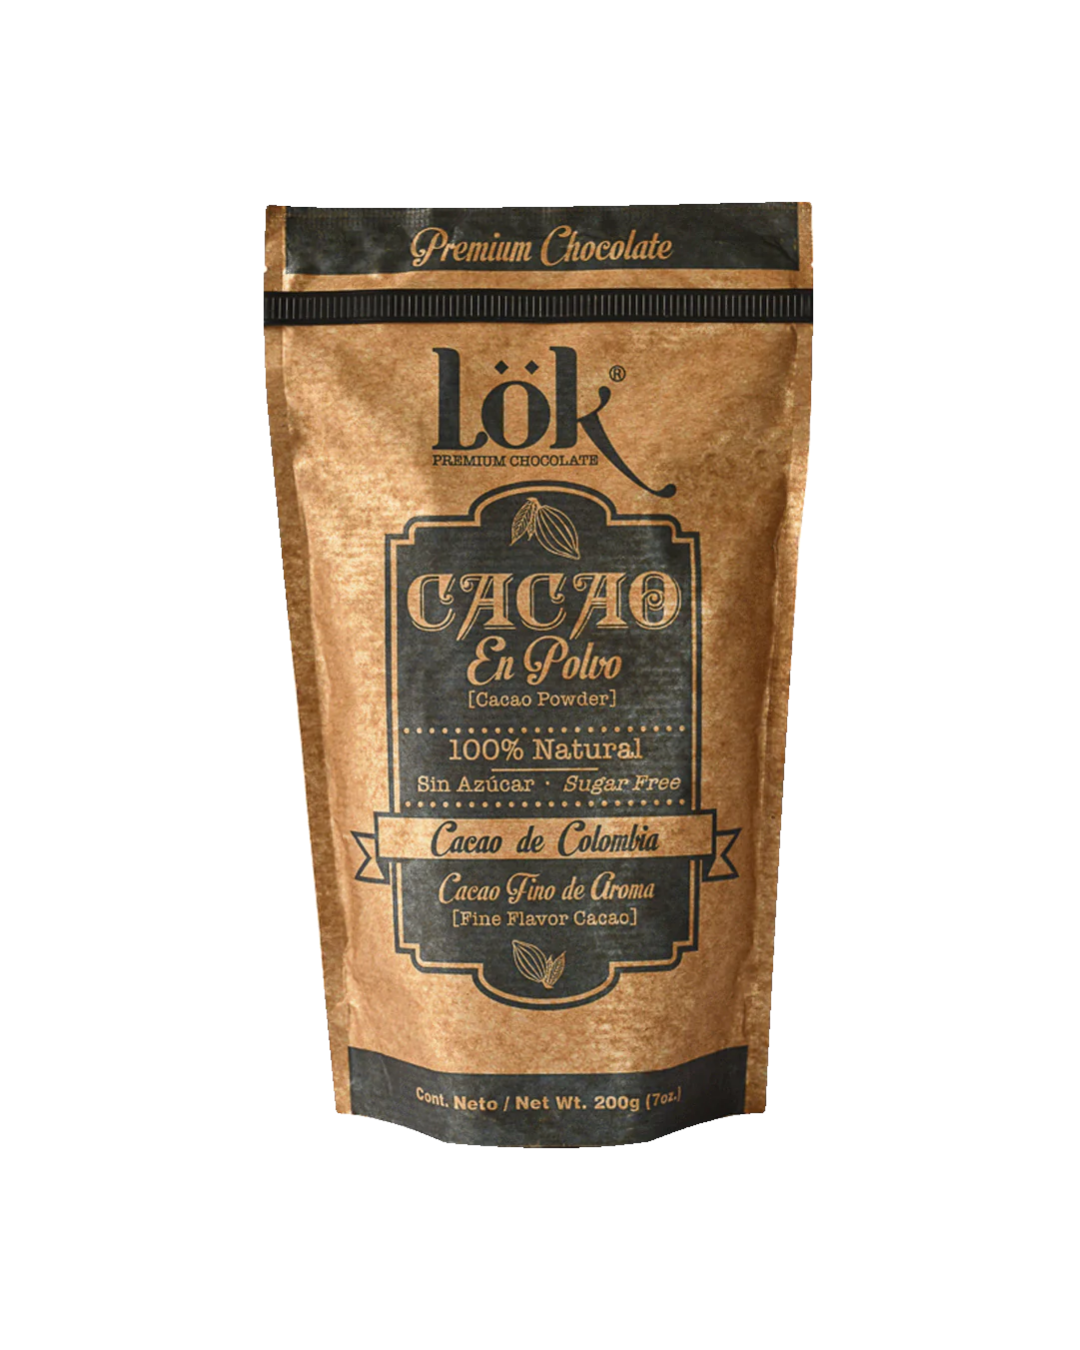 Sugar-free cocoa Canderel Cankao – Chefino